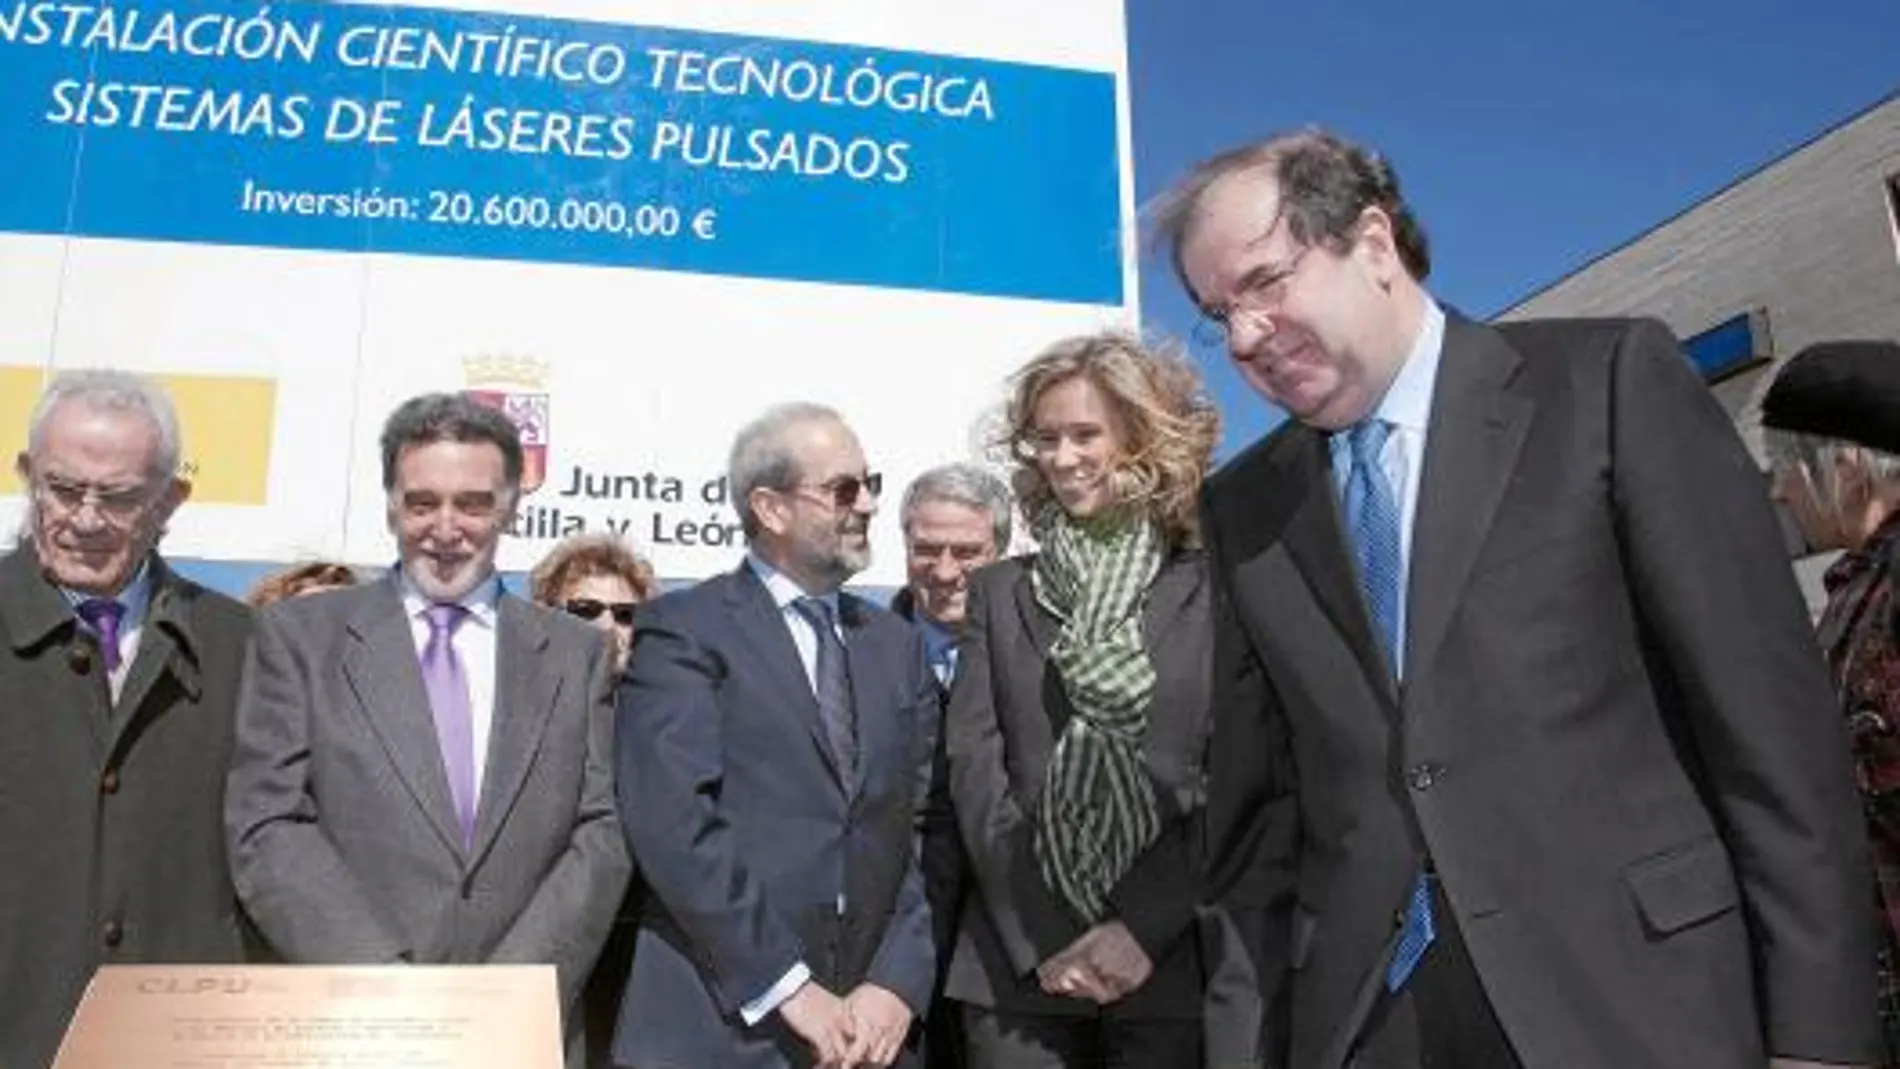 El presidente Juan Vicente Herrera, la ministra Cristina Garmendia, Miguel Alejo, Daniel Hernández y Sánchez Terán